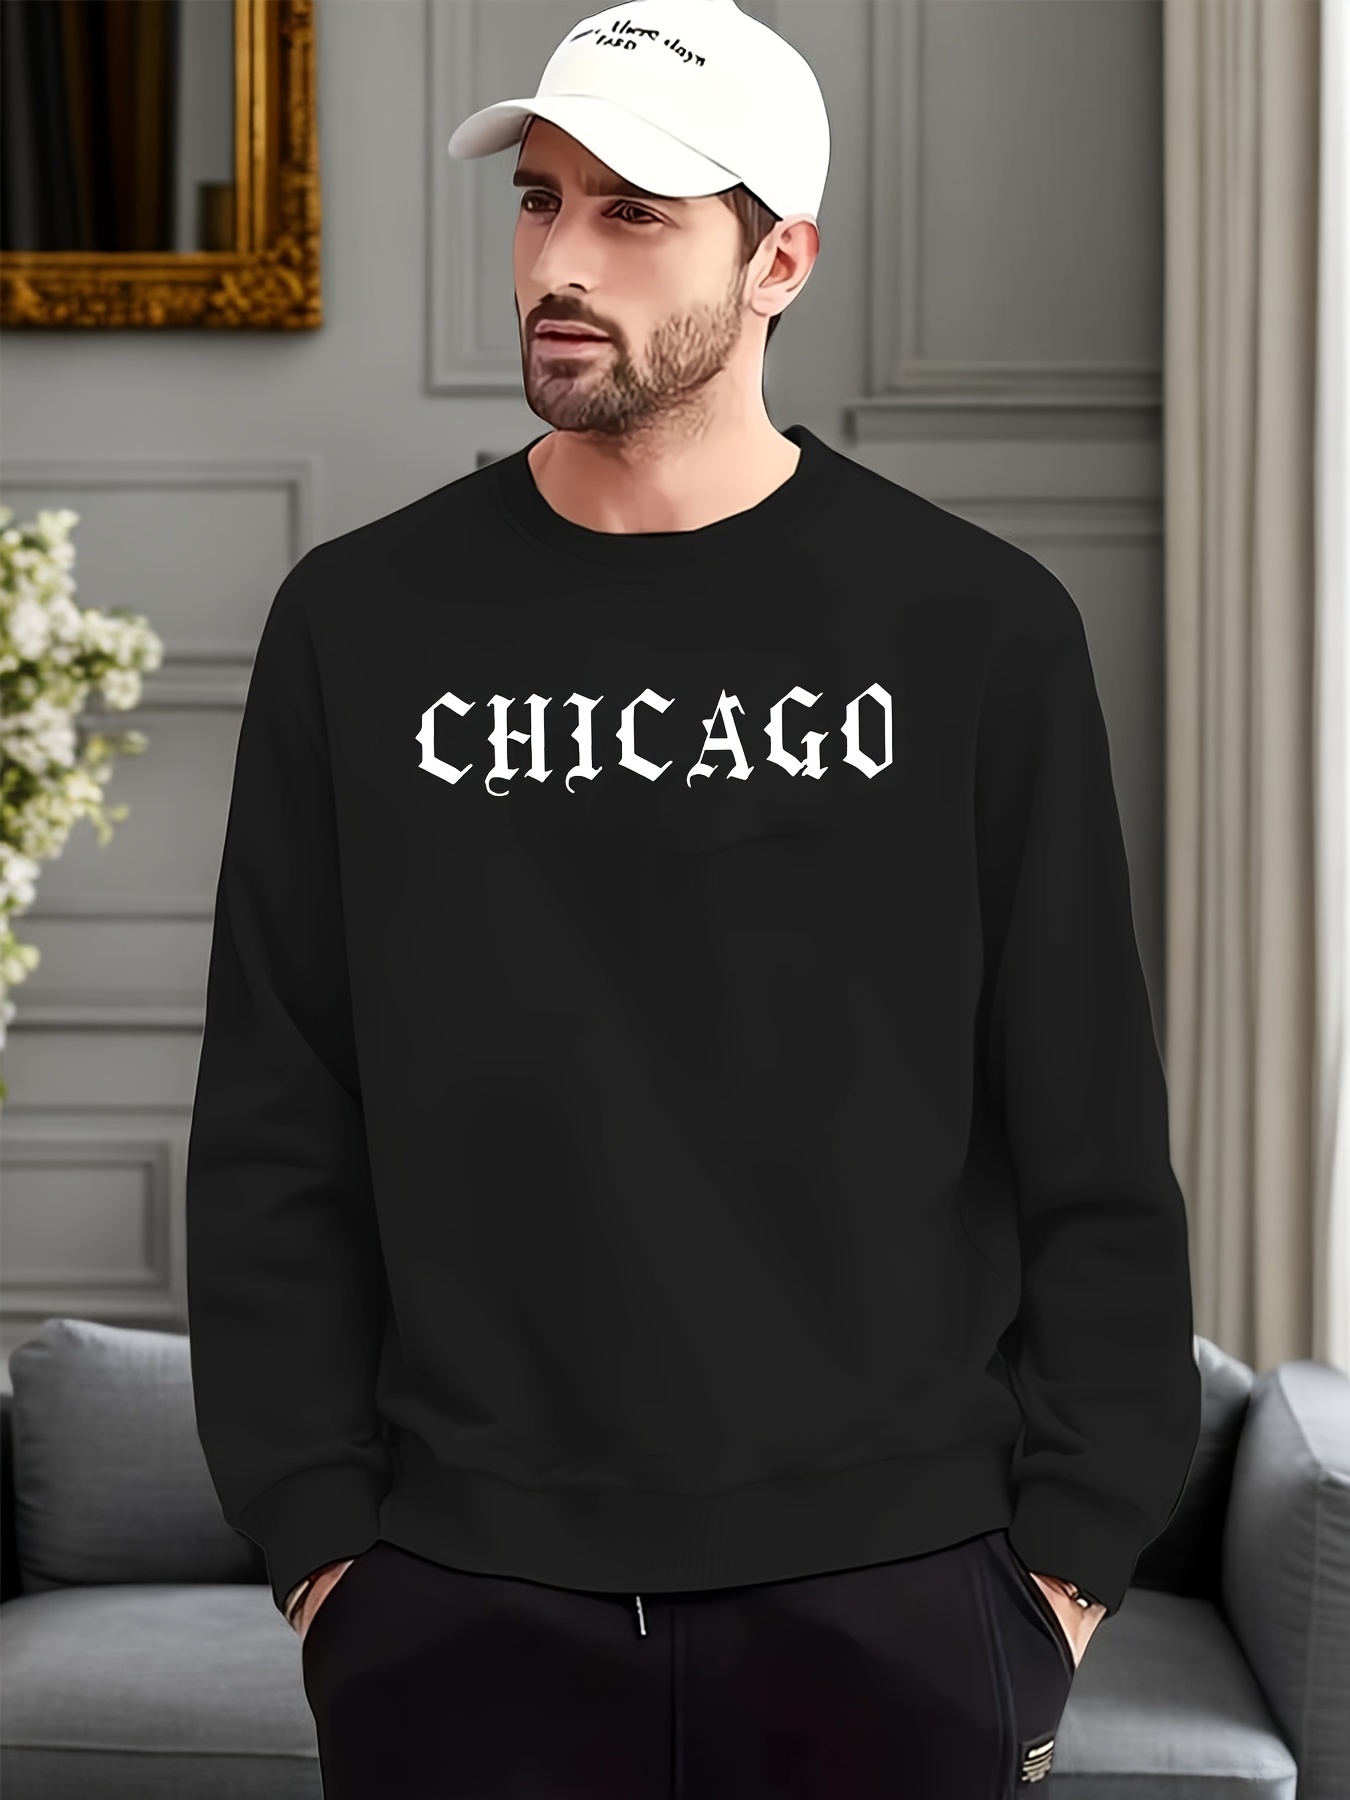 CHICAGOプリントトレンディースウェットシャツ、メンズカジュアル